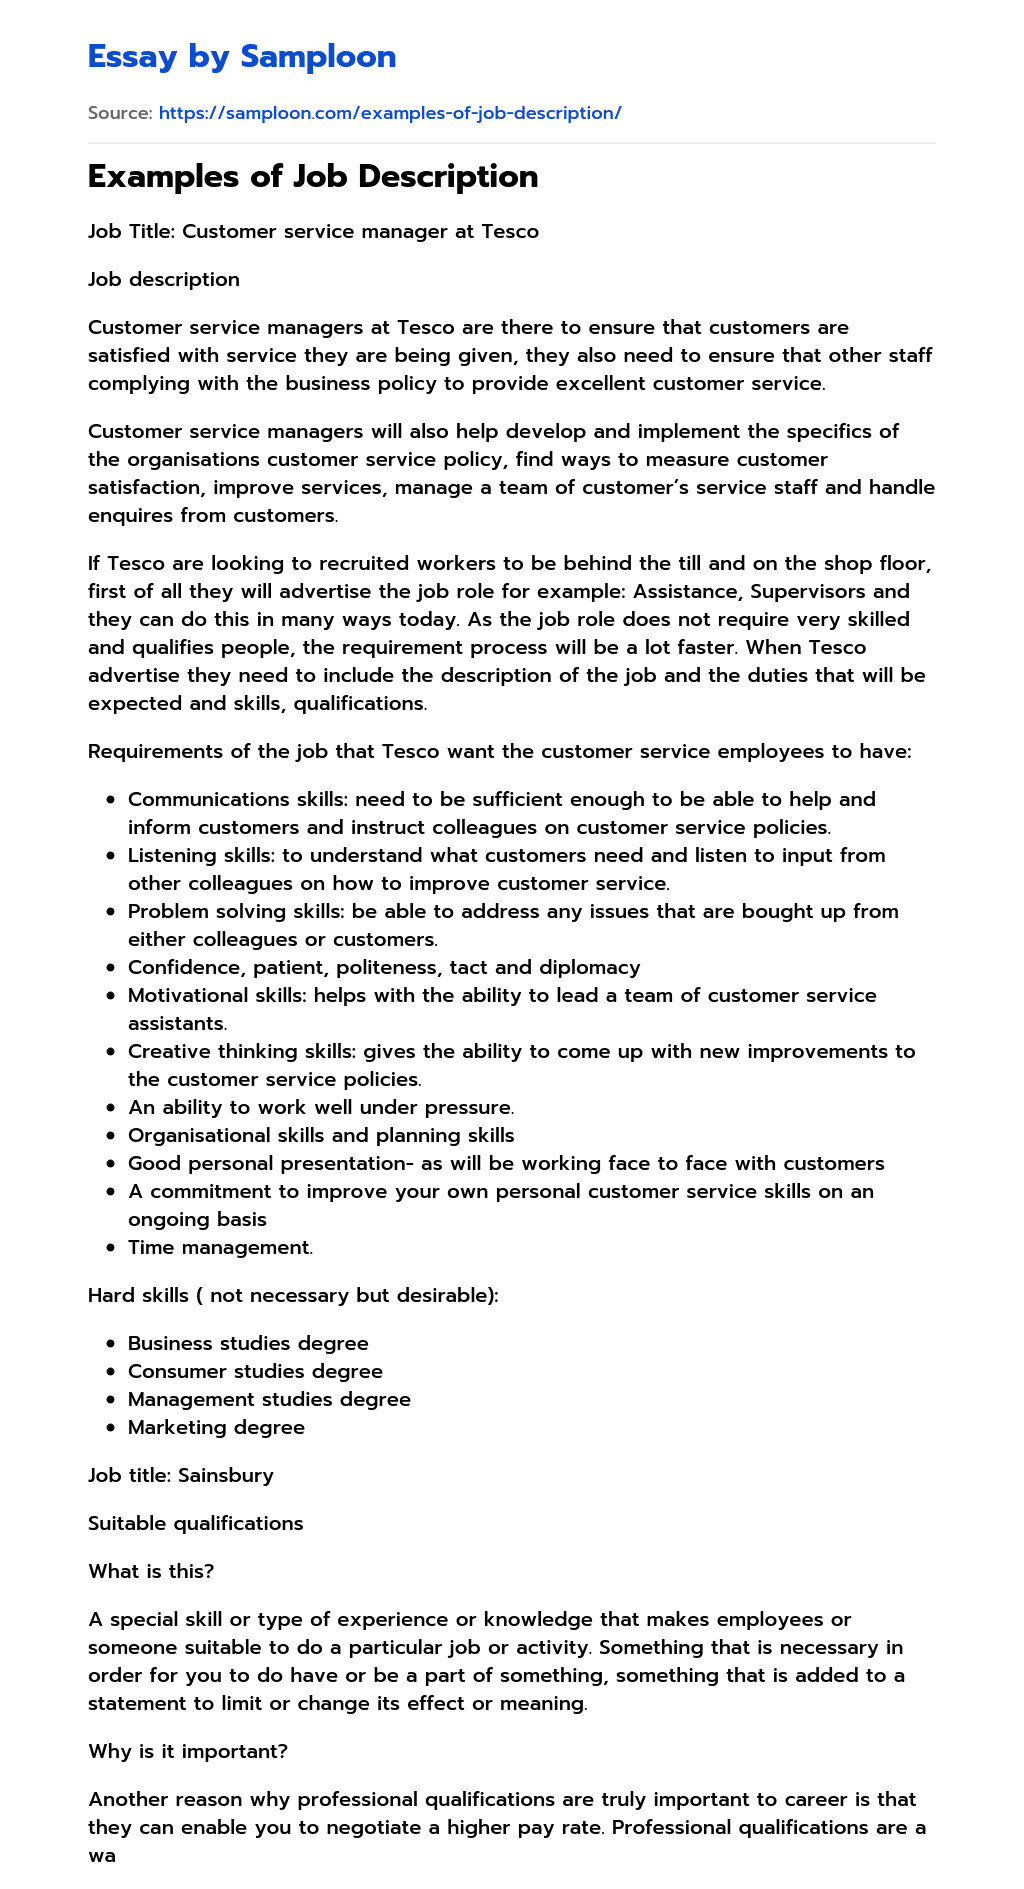 Examples of Job Description essay